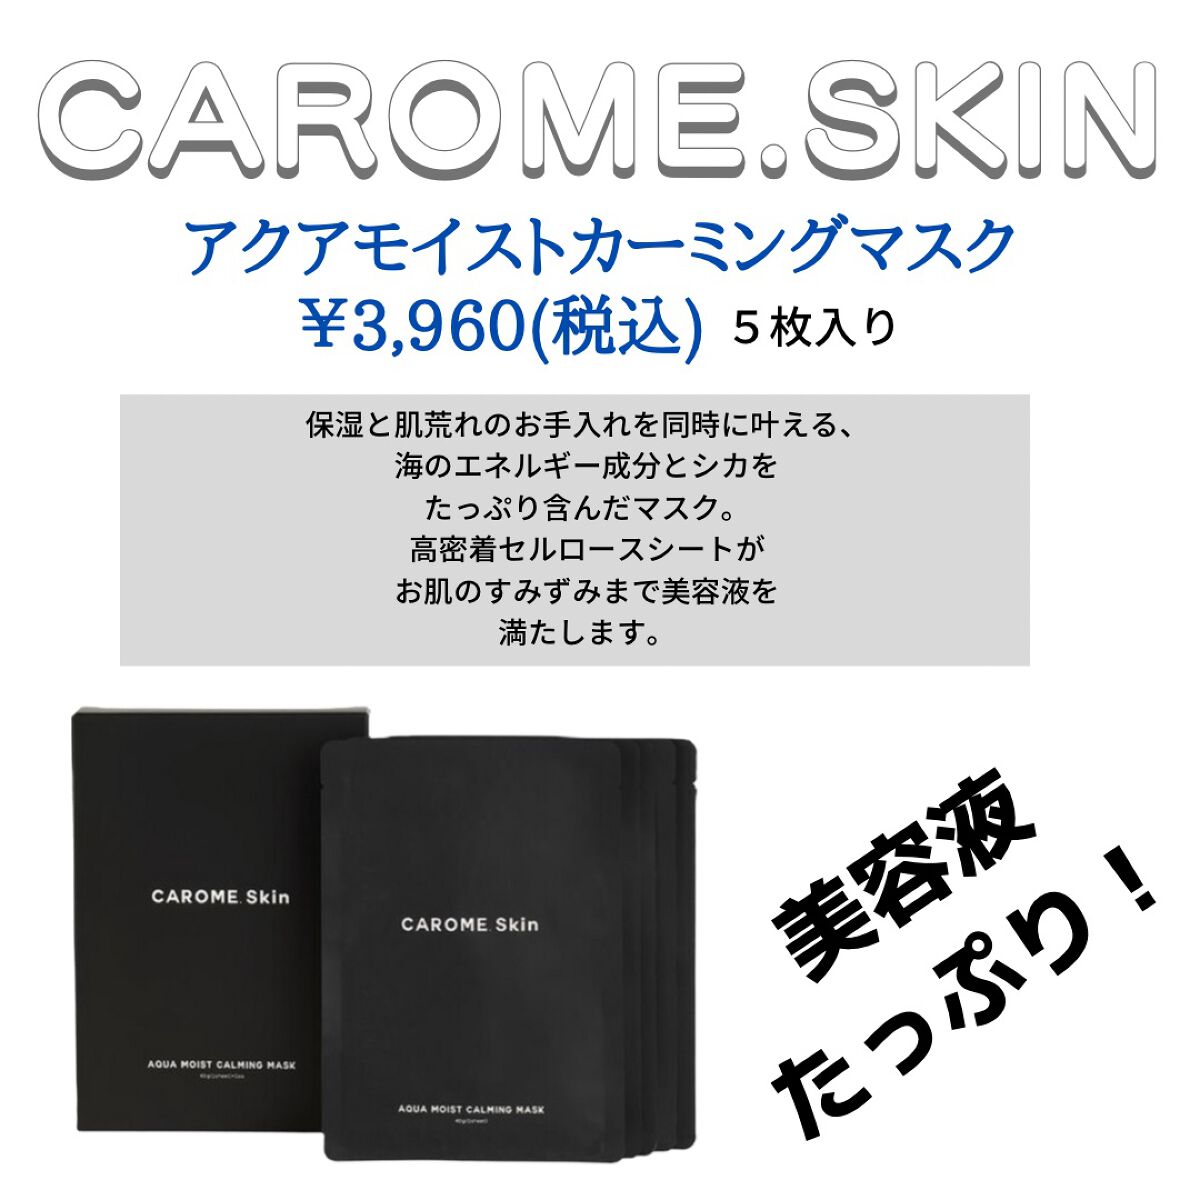 【試してみた】アクアモイストカーミングマスク／CAROME. Skin